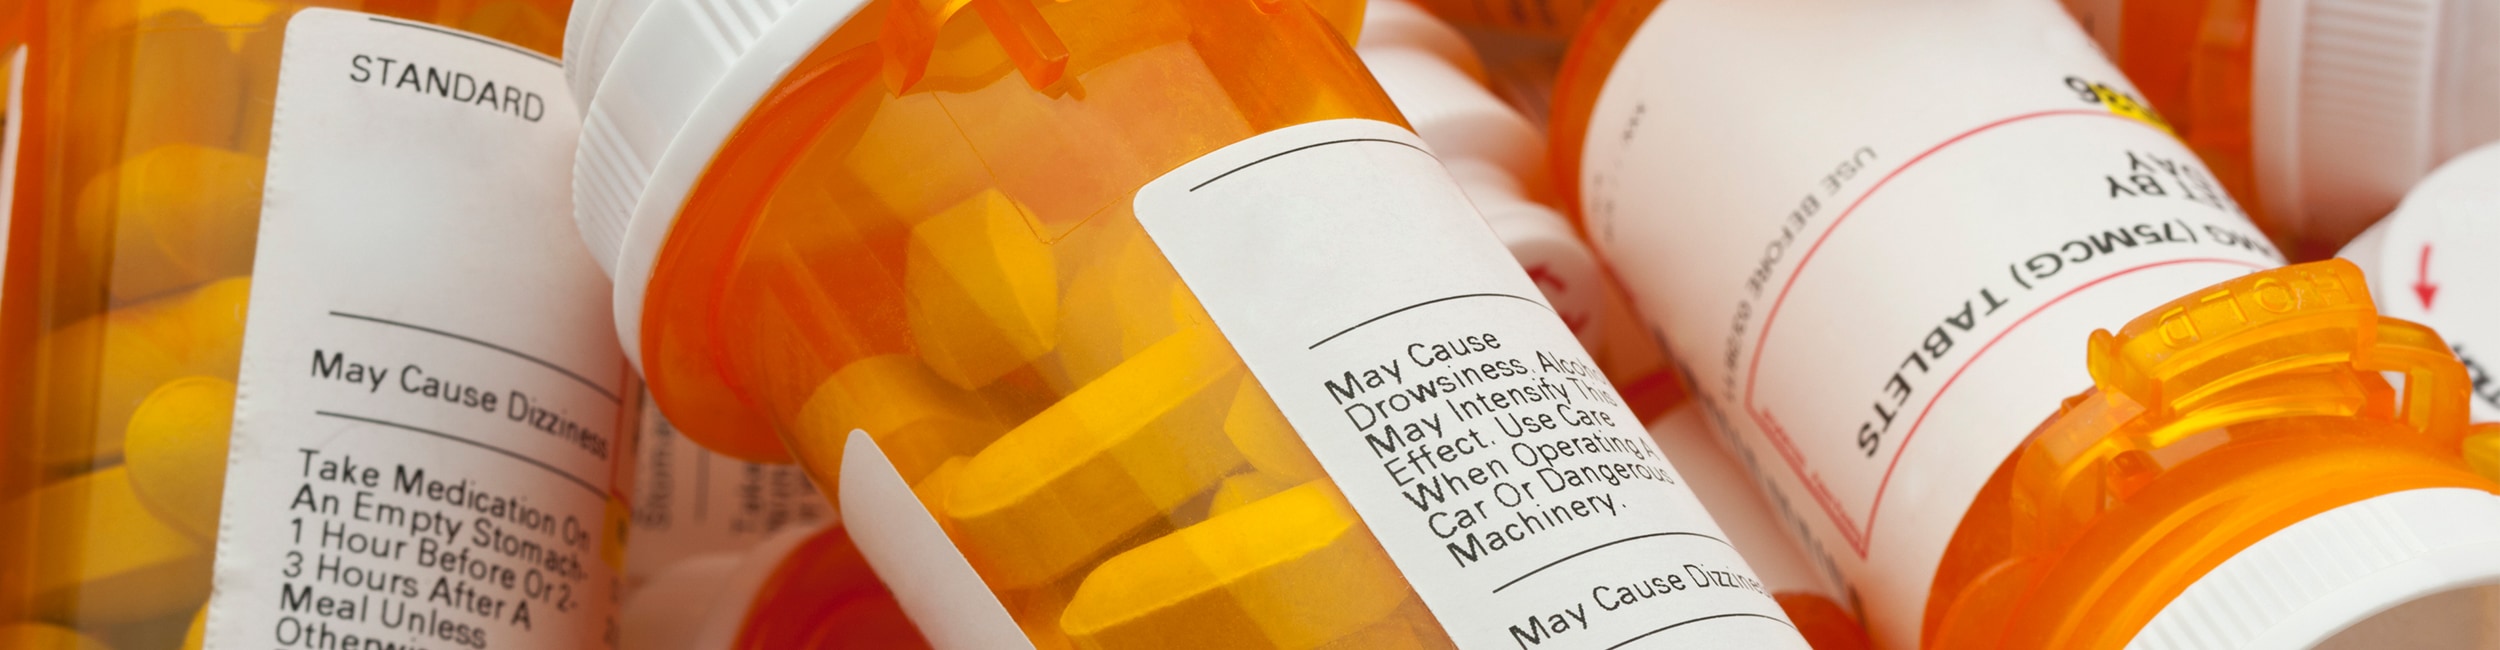 Medical bottles and labels